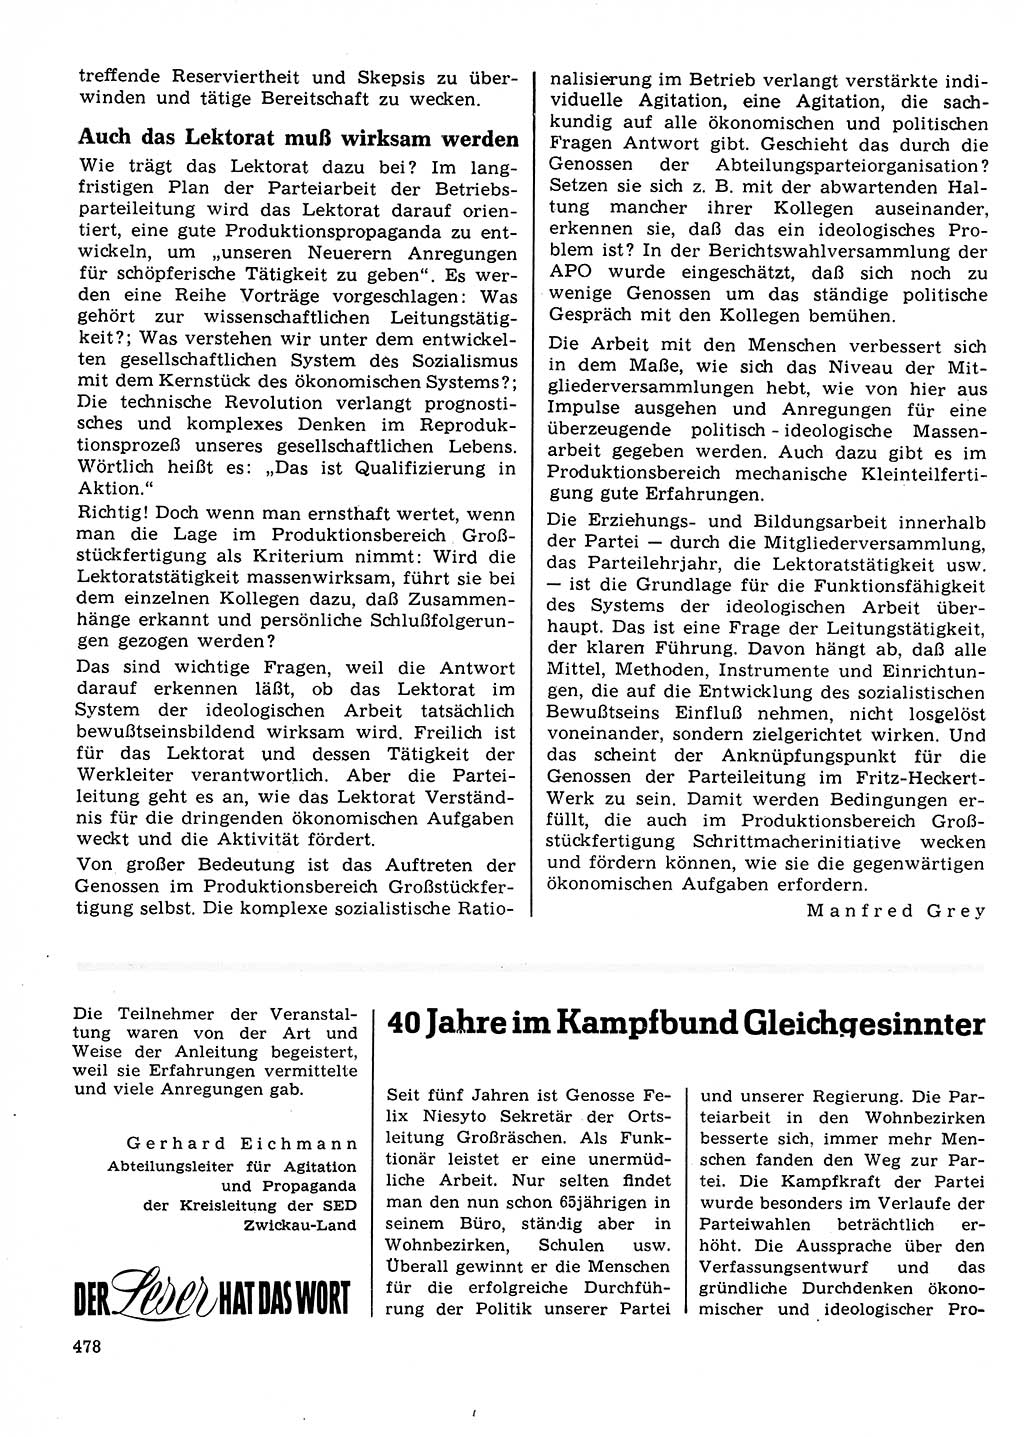 Neuer Weg (NW), Organ des Zentralkomitees (ZK) der SED (Sozialistische Einheitspartei Deutschlands) für Fragen des Parteilebens, 23. Jahrgang [Deutsche Demokratische Republik (DDR)] 1968, Seite 478 (NW ZK SED DDR 1968, S. 478)